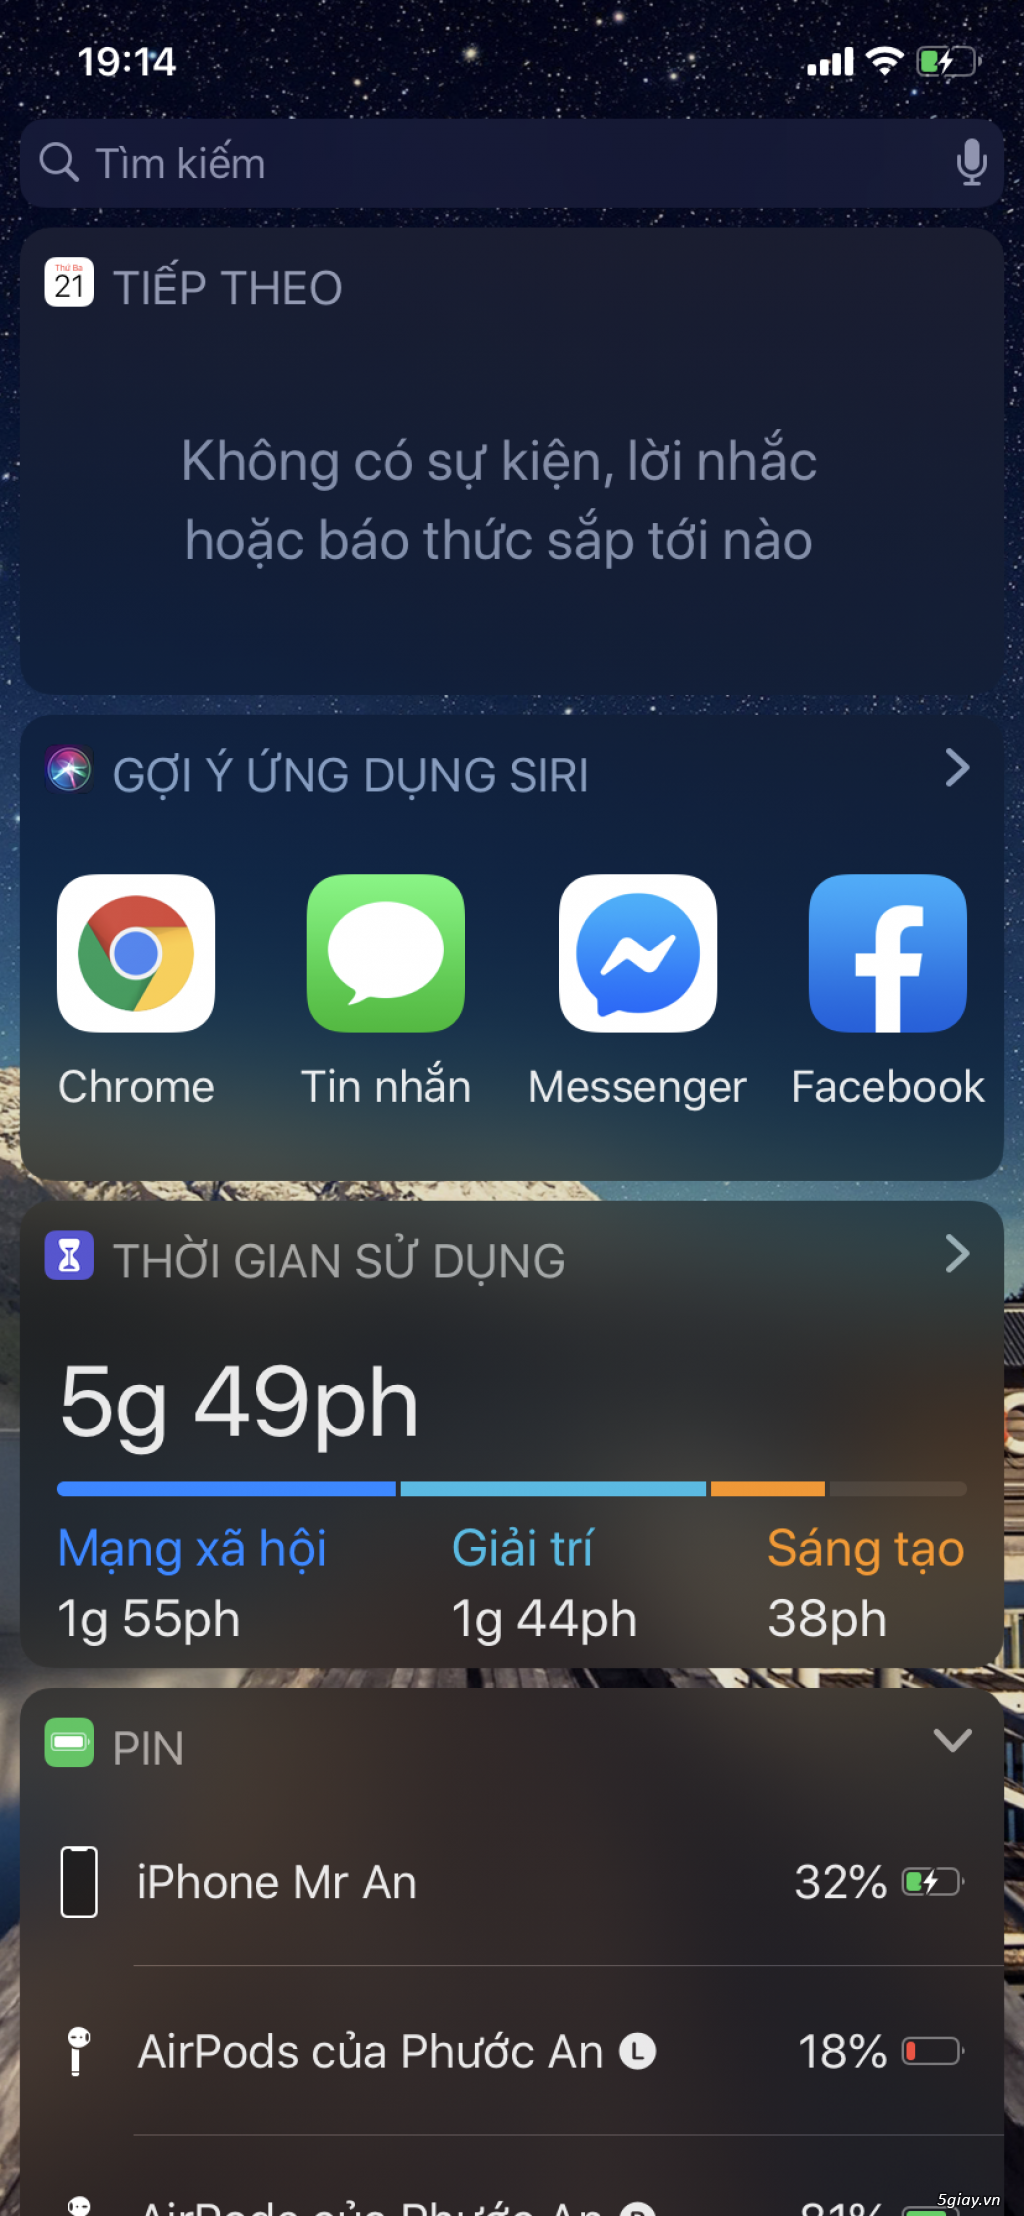 Iphone 11 màu mint 128G 2 sim vật lý - 3